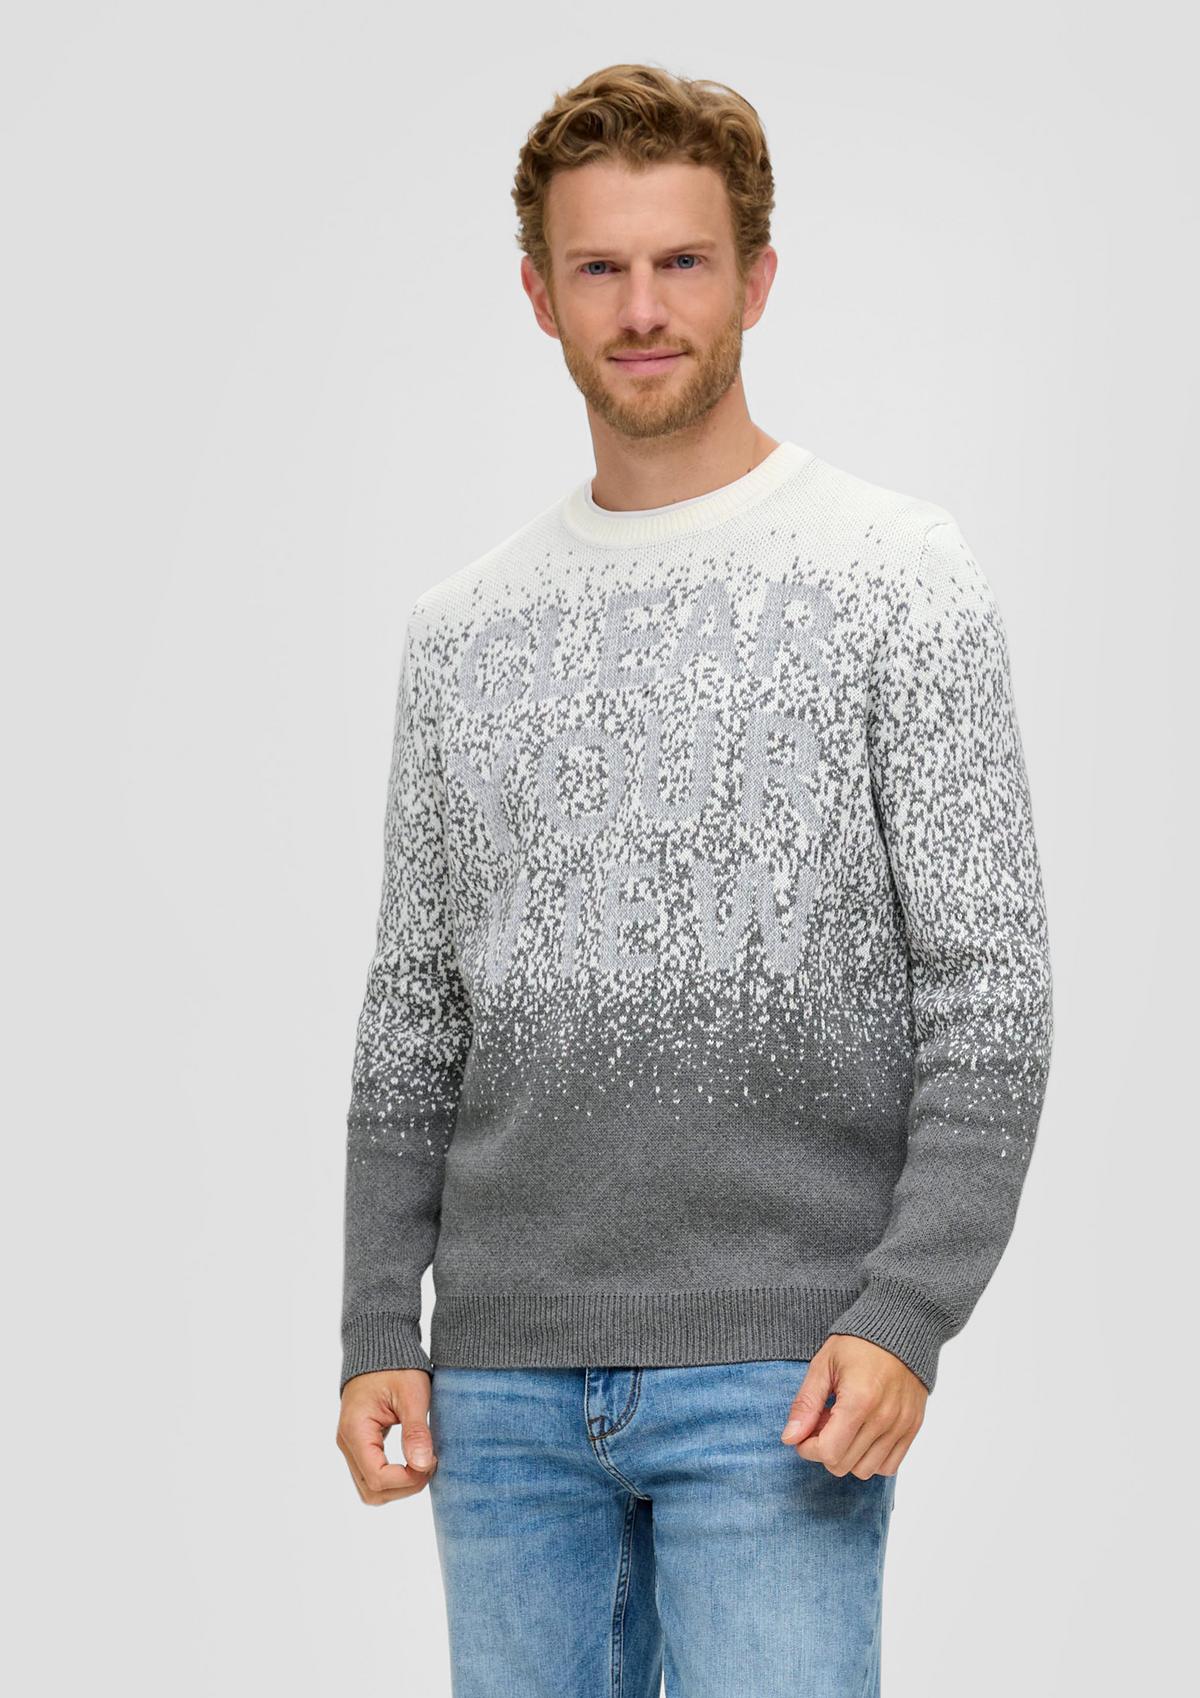 Pletený pulovr se vzorem po celé ploše